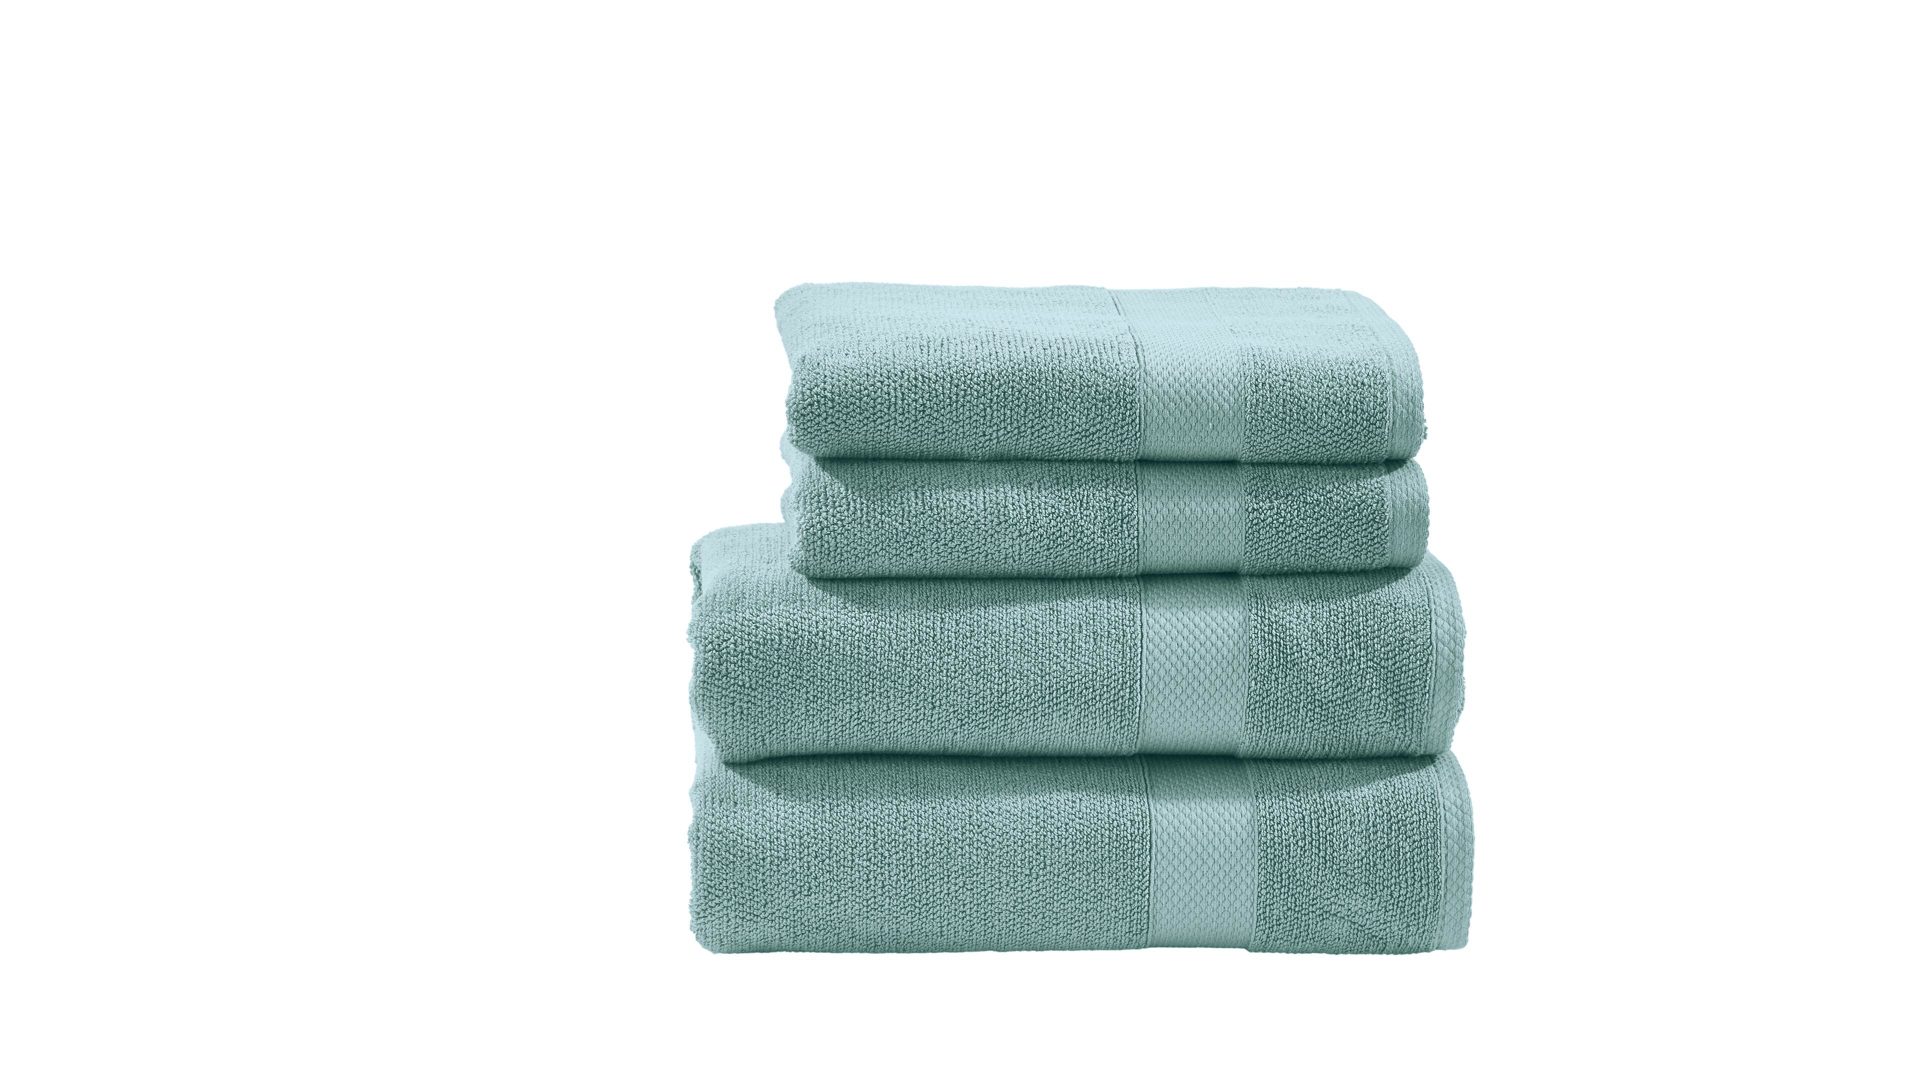 Handtuch-Set Done by karabel home company aus Stoff in Grün done Handtuch-Set Deluxe oceanfarbene Baumwolle – vierteilig